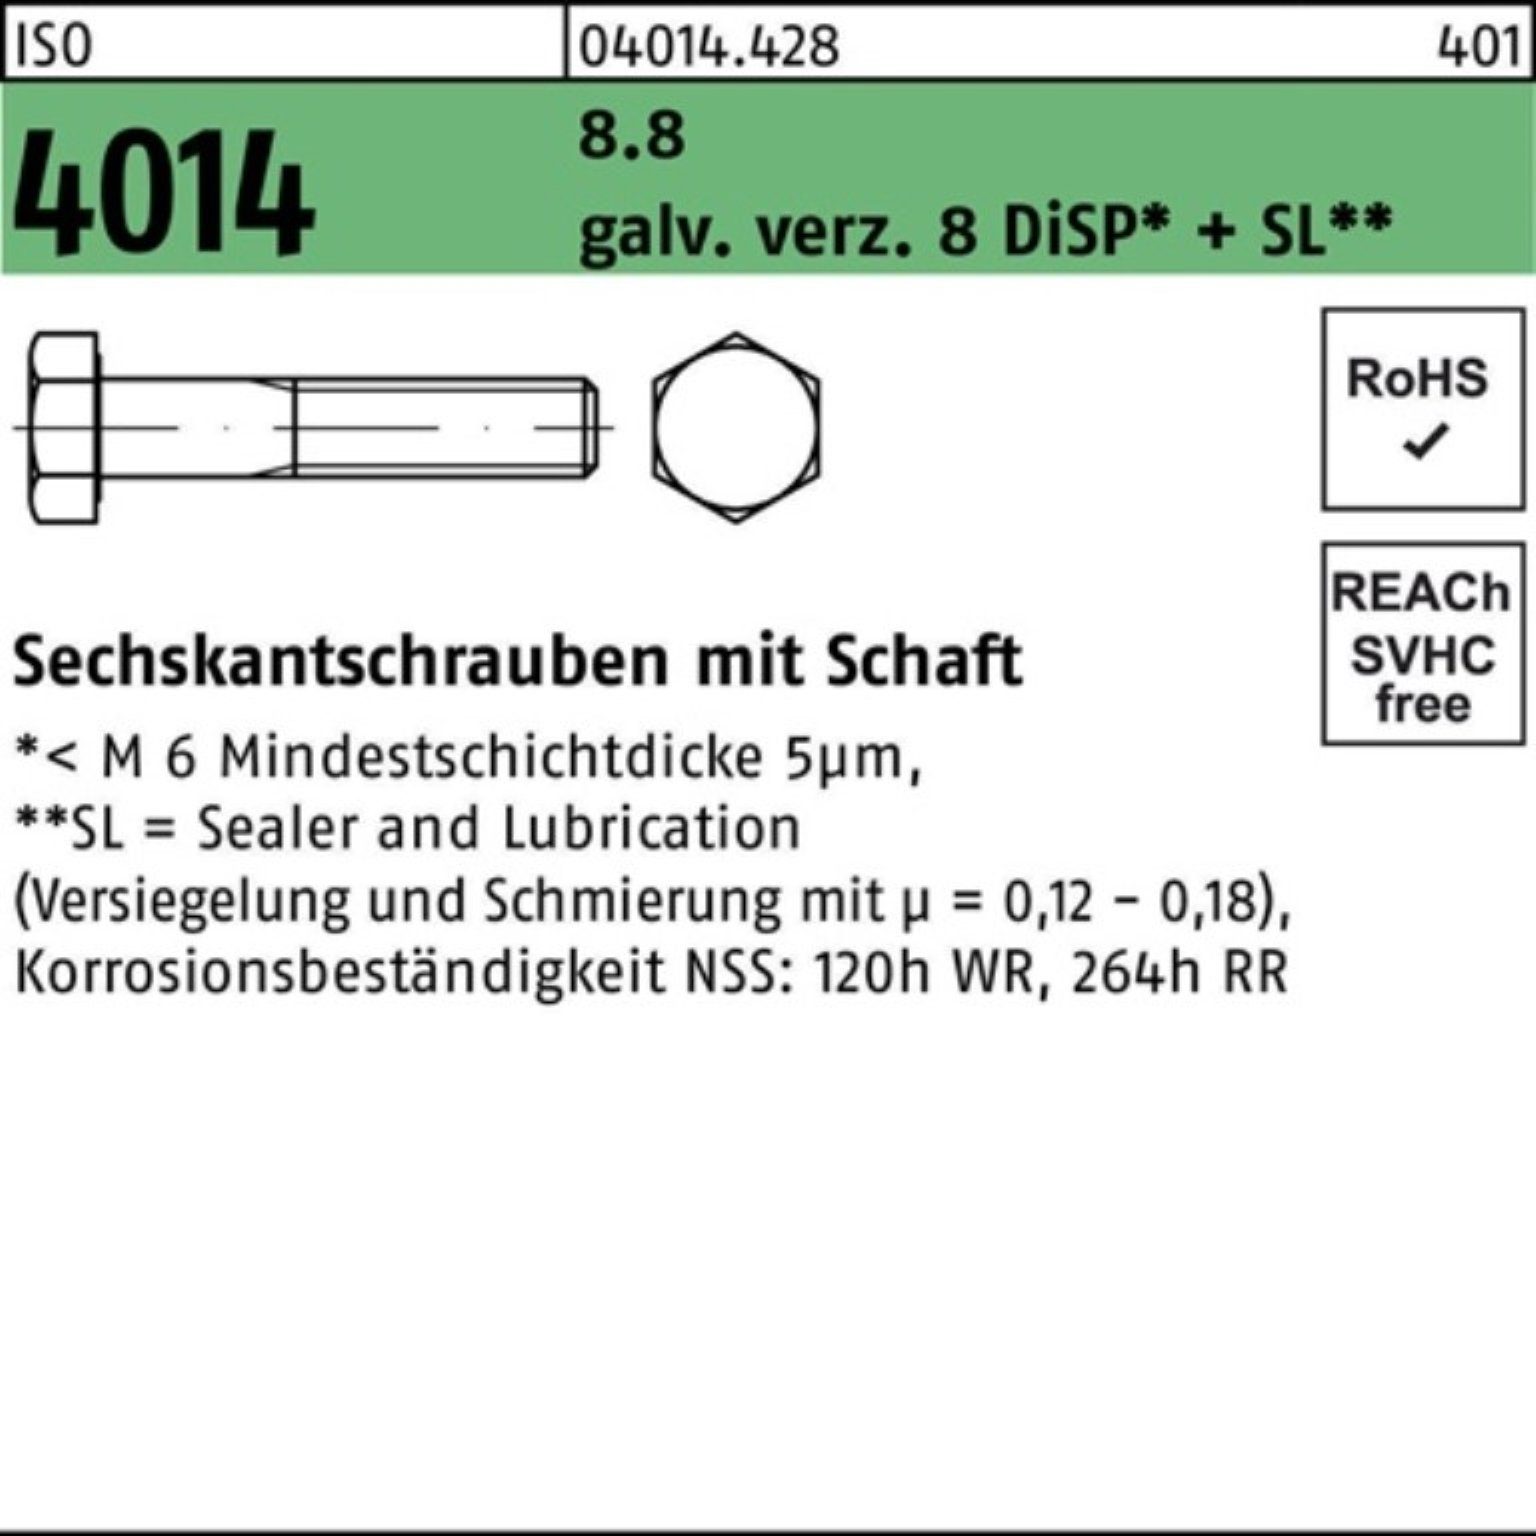 Bufab Sechskantschraube 100er Pack Sechskantschraube ISO 4014 Schaft M30x170 8.8 galv.verz. 8